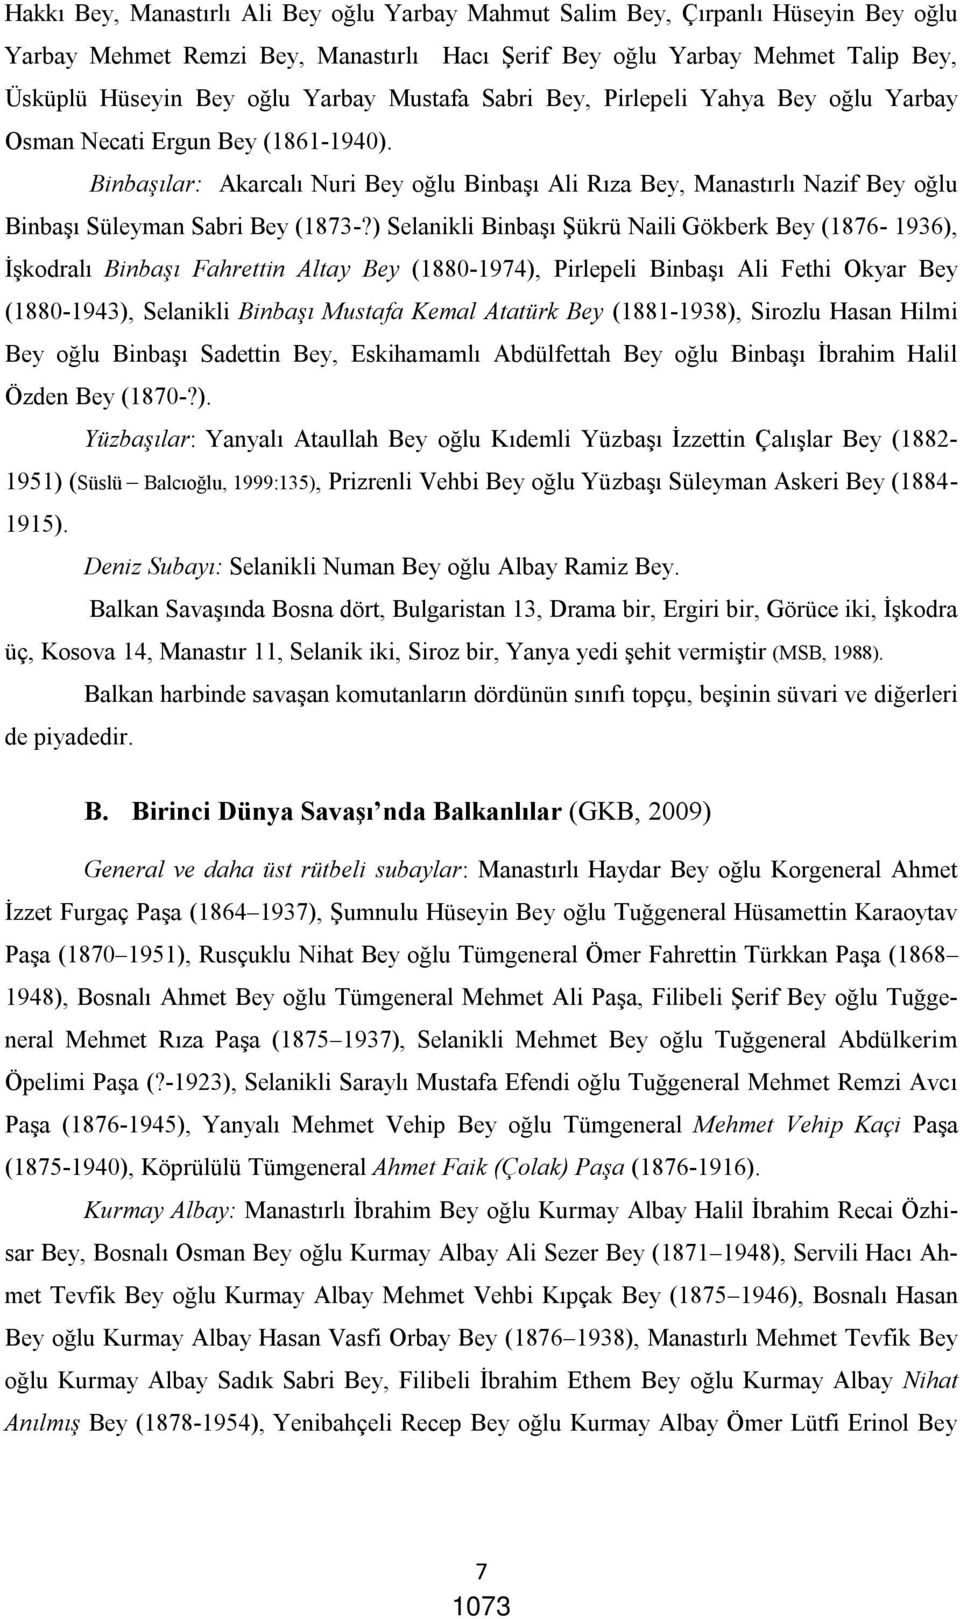 Binbaşılar: Akarcalı Nuri Bey oğlu Binbaşı Ali Rıza Bey, Manastırlı Nazif Bey oğlu Binbaşı Süleyman Sabri Bey (1873-?